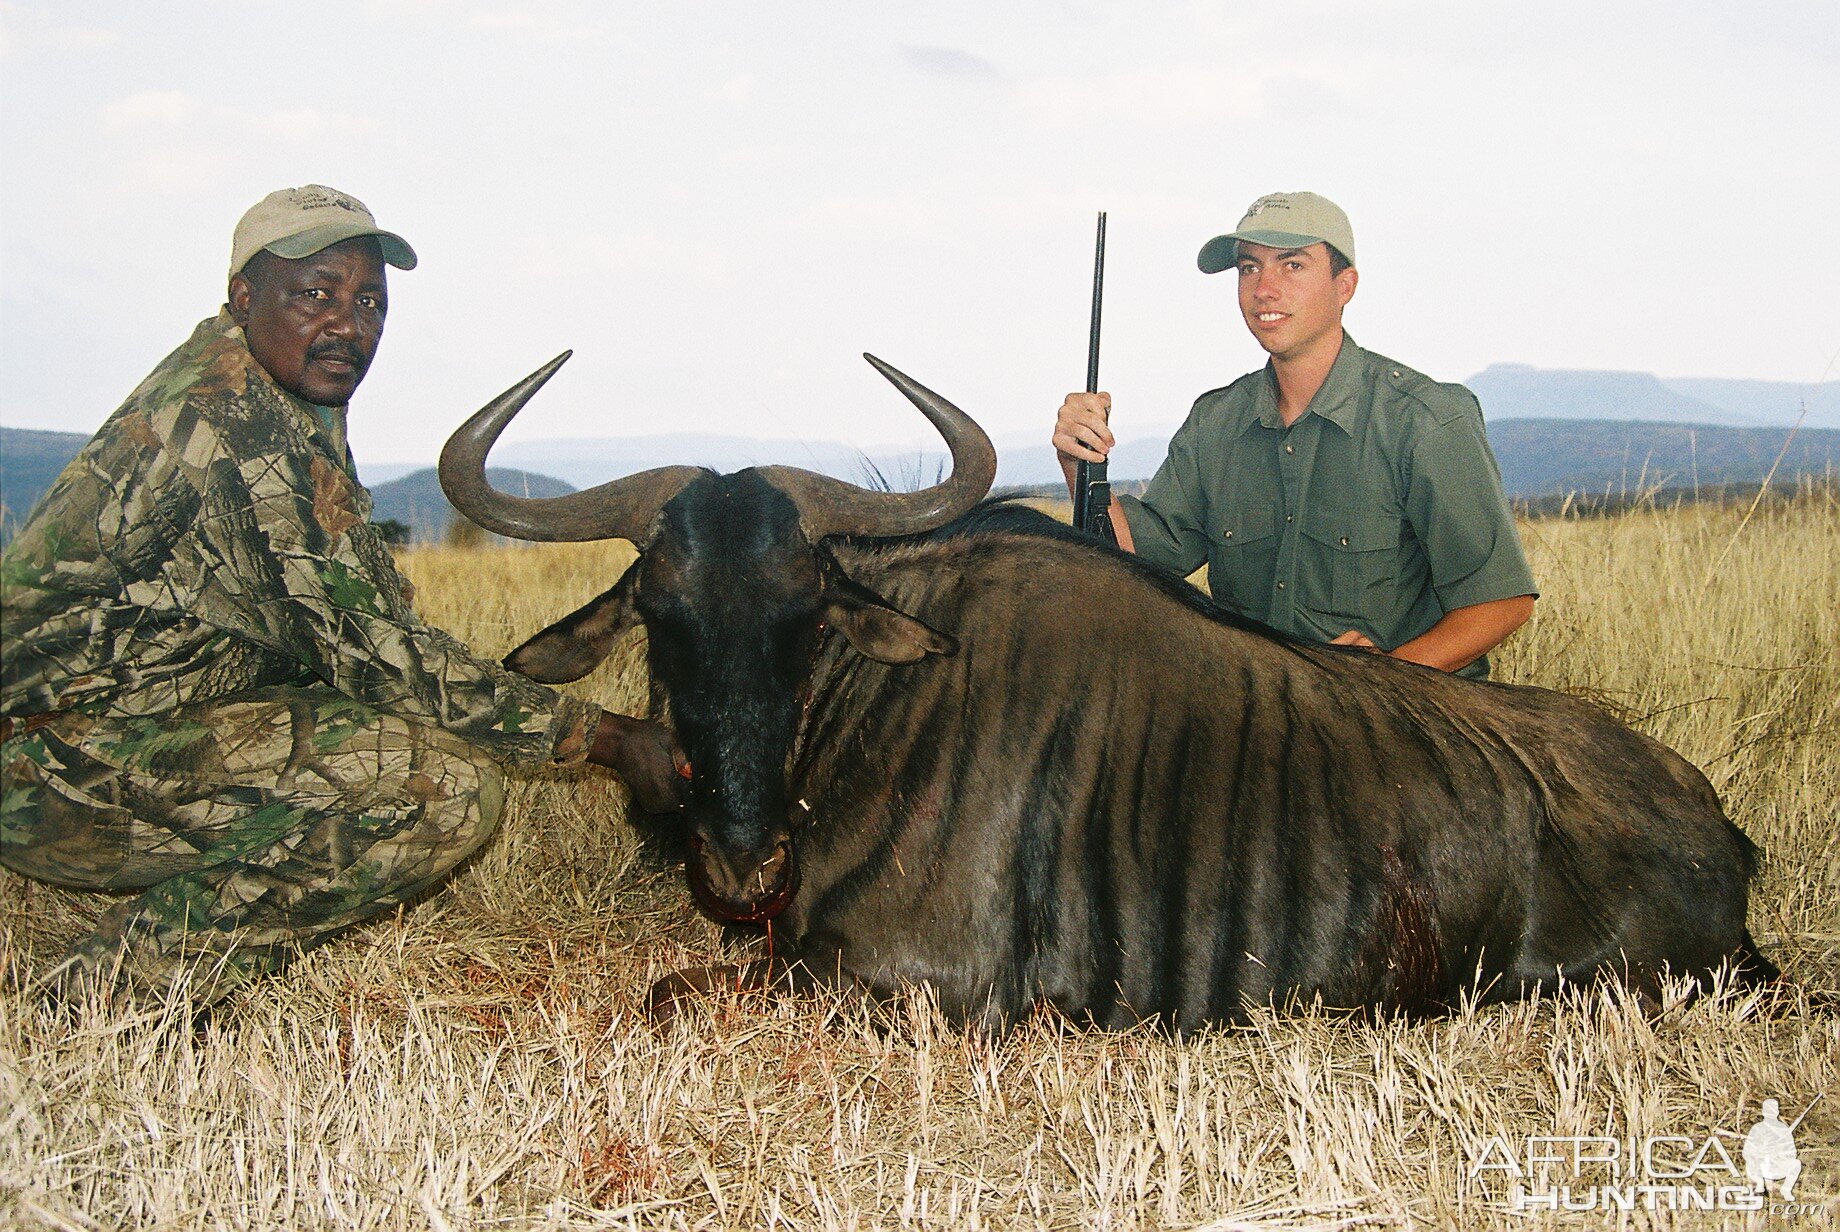 Hunting Blue Wildebeest with Wintershoek Johnny Vivier Safaris in SA